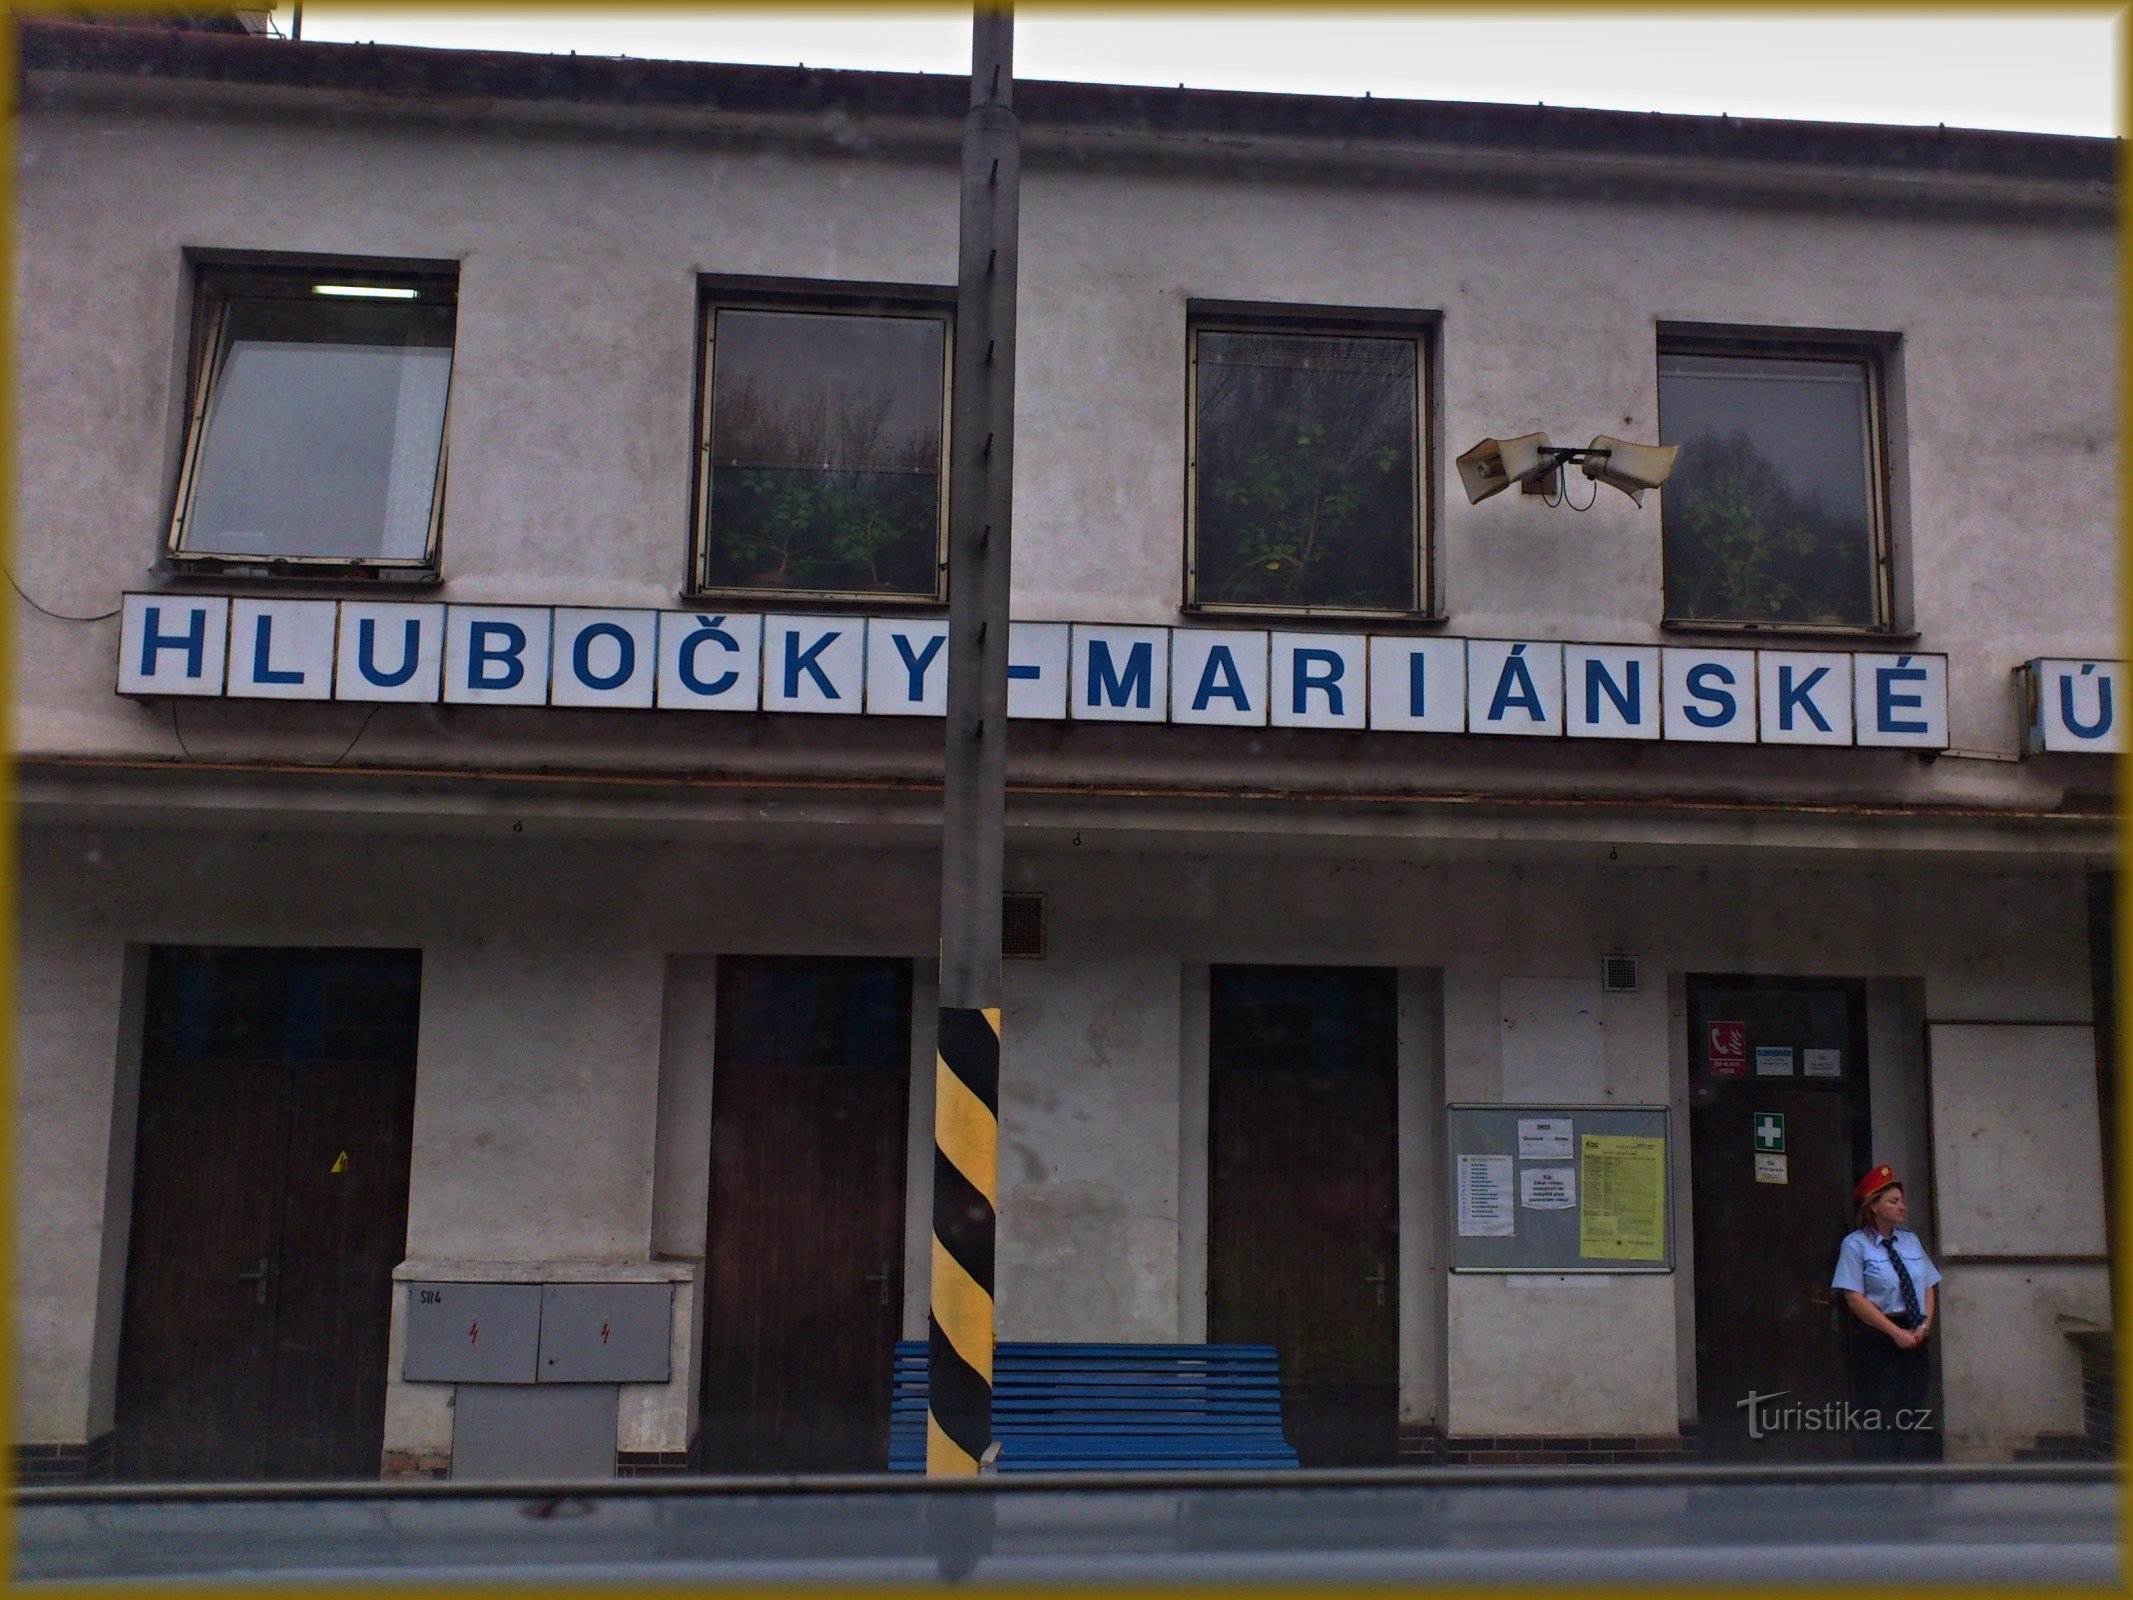 Hlubočky-Marianske-vallei - treinstation